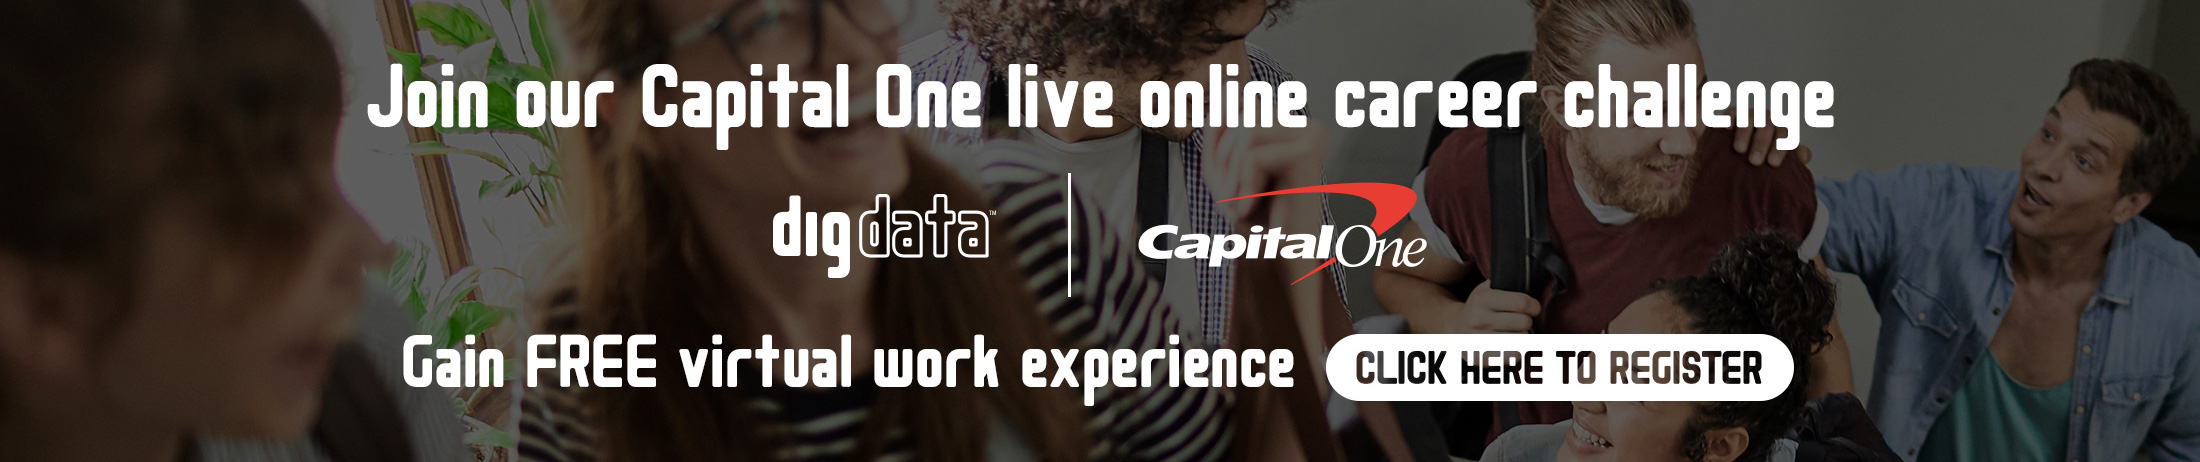 Digdata Capital One Event Registration Banner